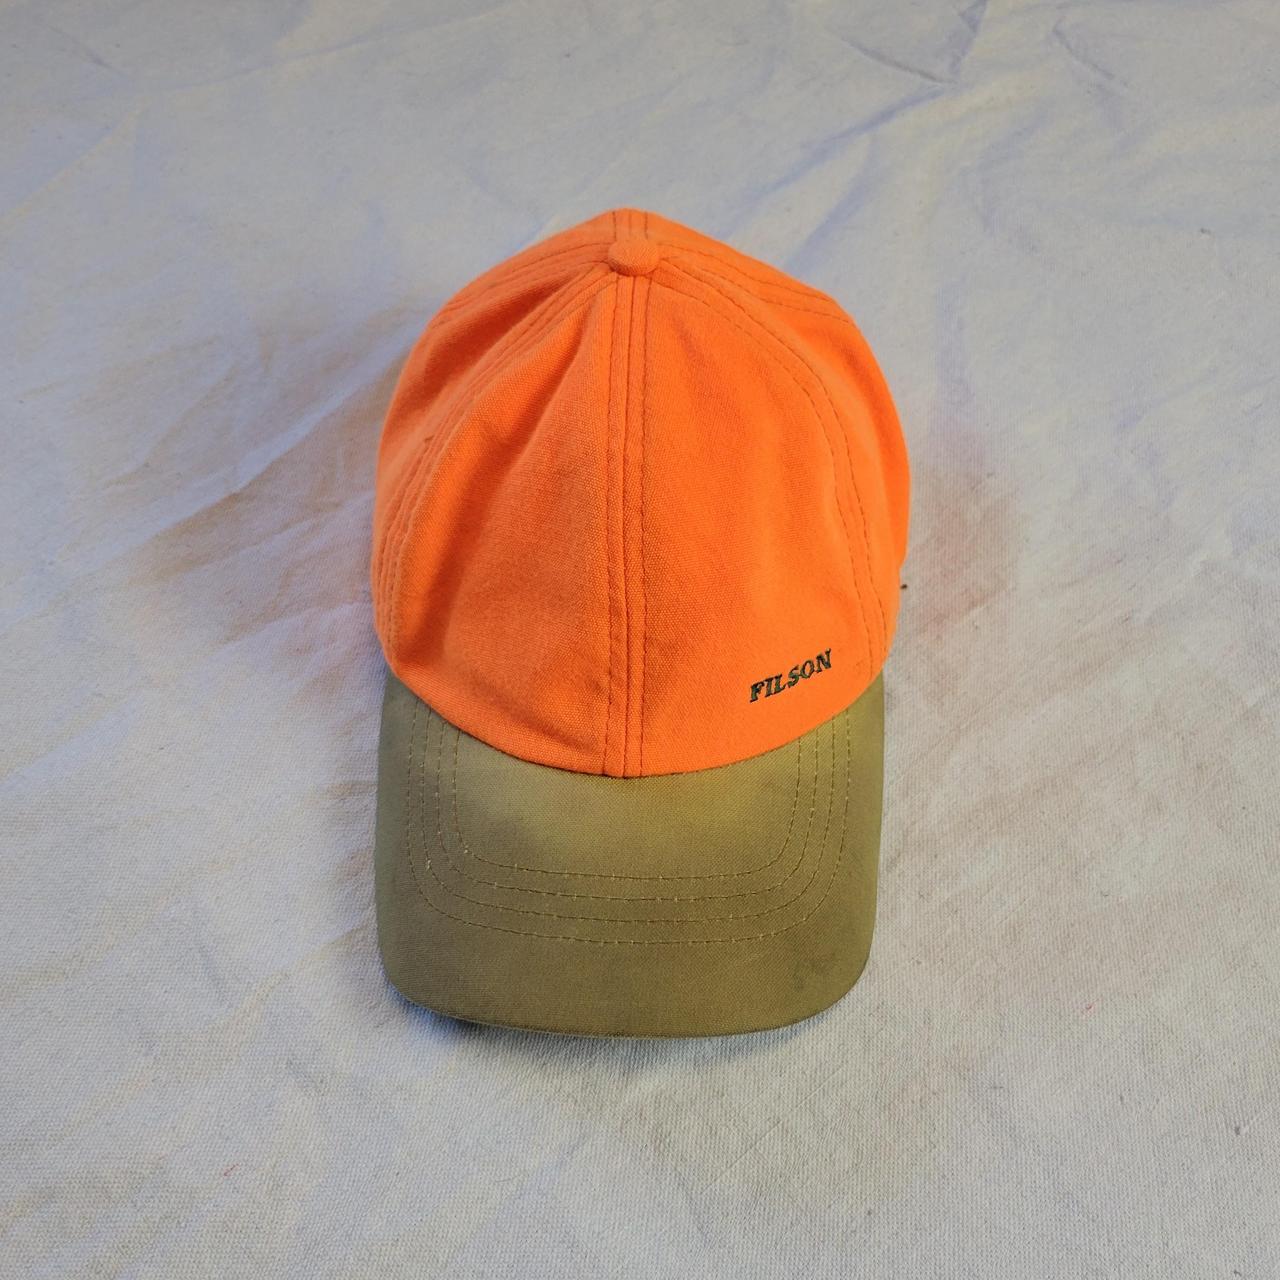 Product Image 2 - Vintage Filson orange hat

Super cool